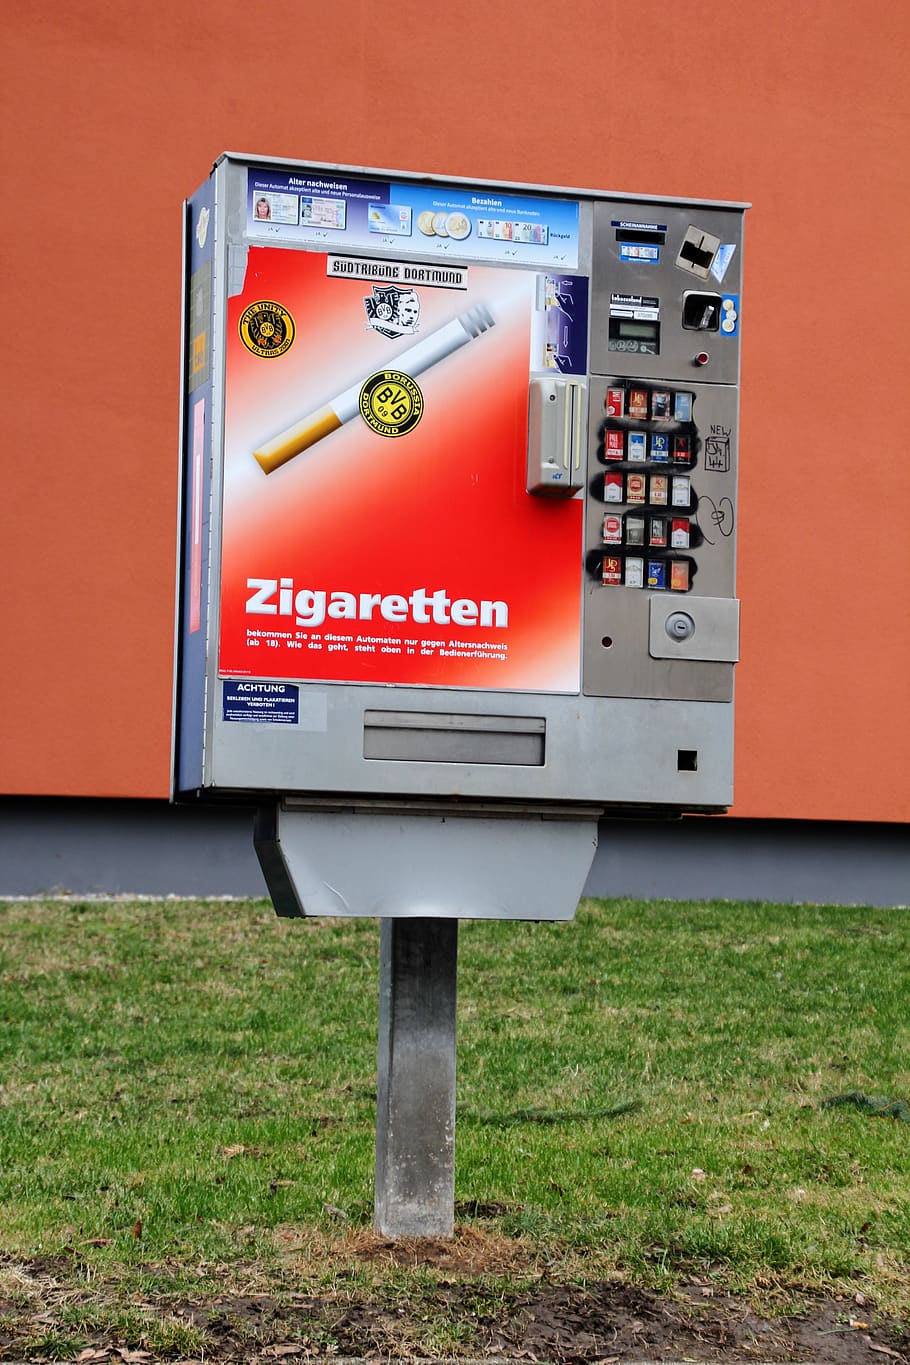 automatic, cigarette machine, urban, cigarettes, smoking, self service, cigarette box, text, communication, western script